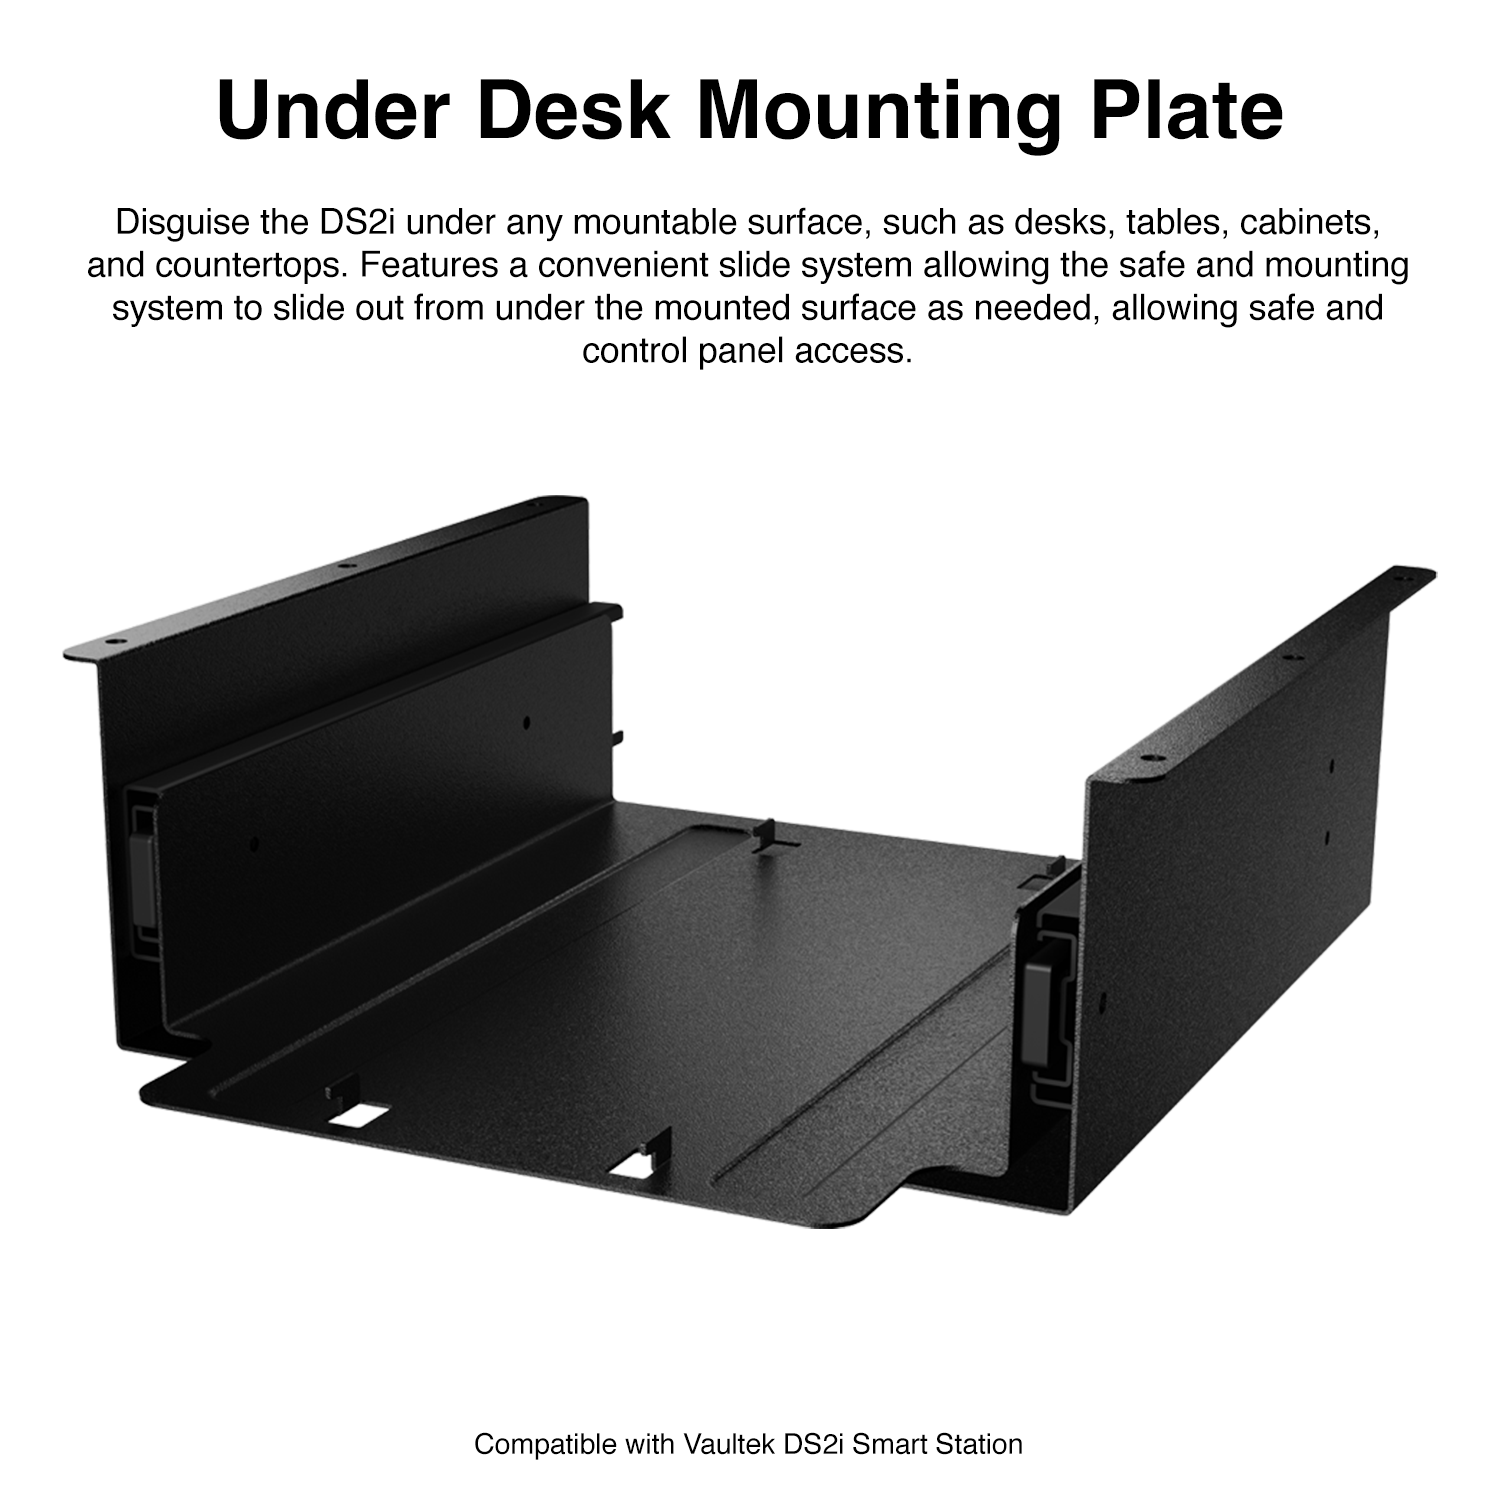 Under desk mounting plate for vaultek smart station ds2i - MODLOCK